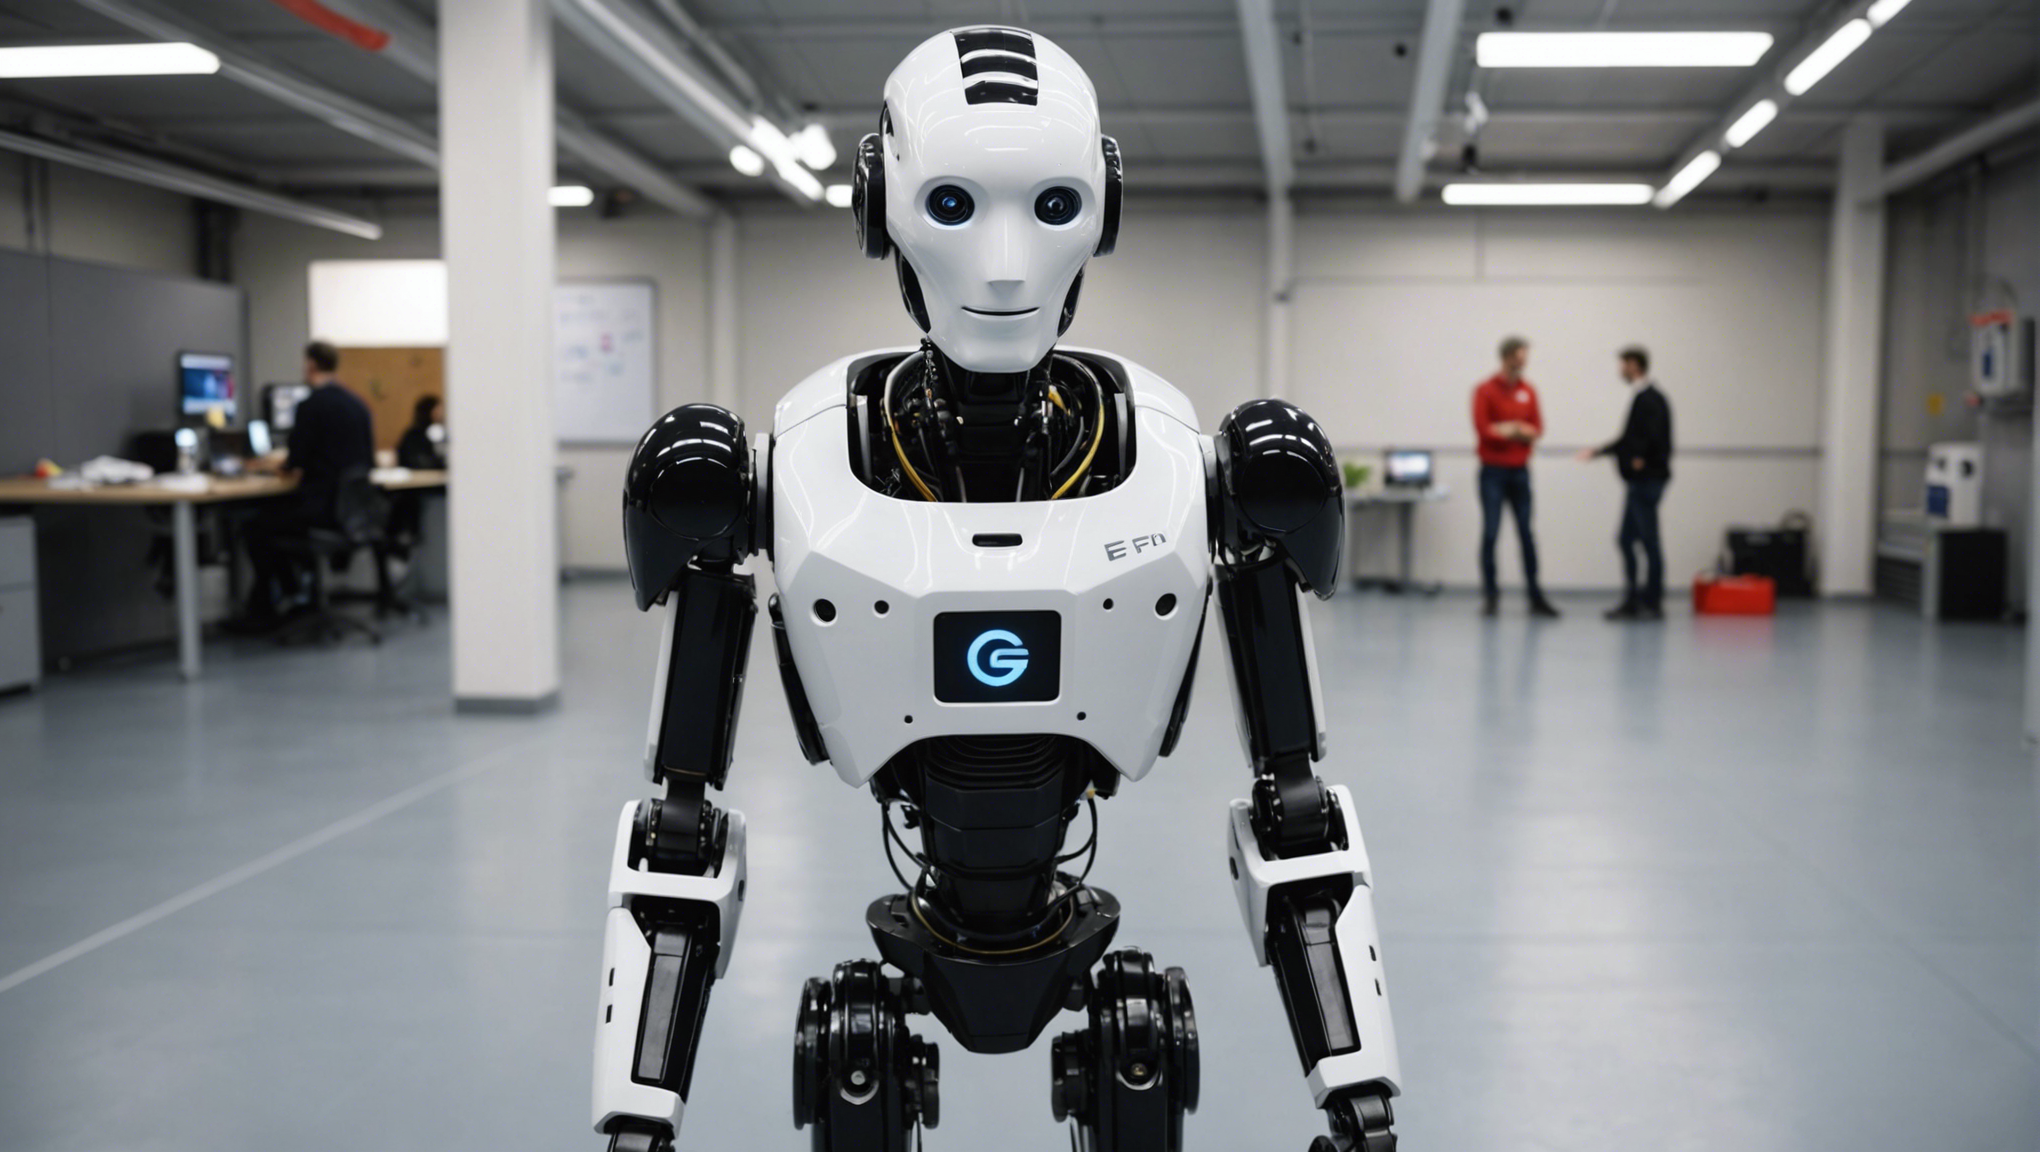 découvrez les dernières avancées en matière de robots nouvelle génération à l'epfl (école polytechnique de lausanne). découvrez les dernières innovations technologiques et les projets de recherche en robotique.